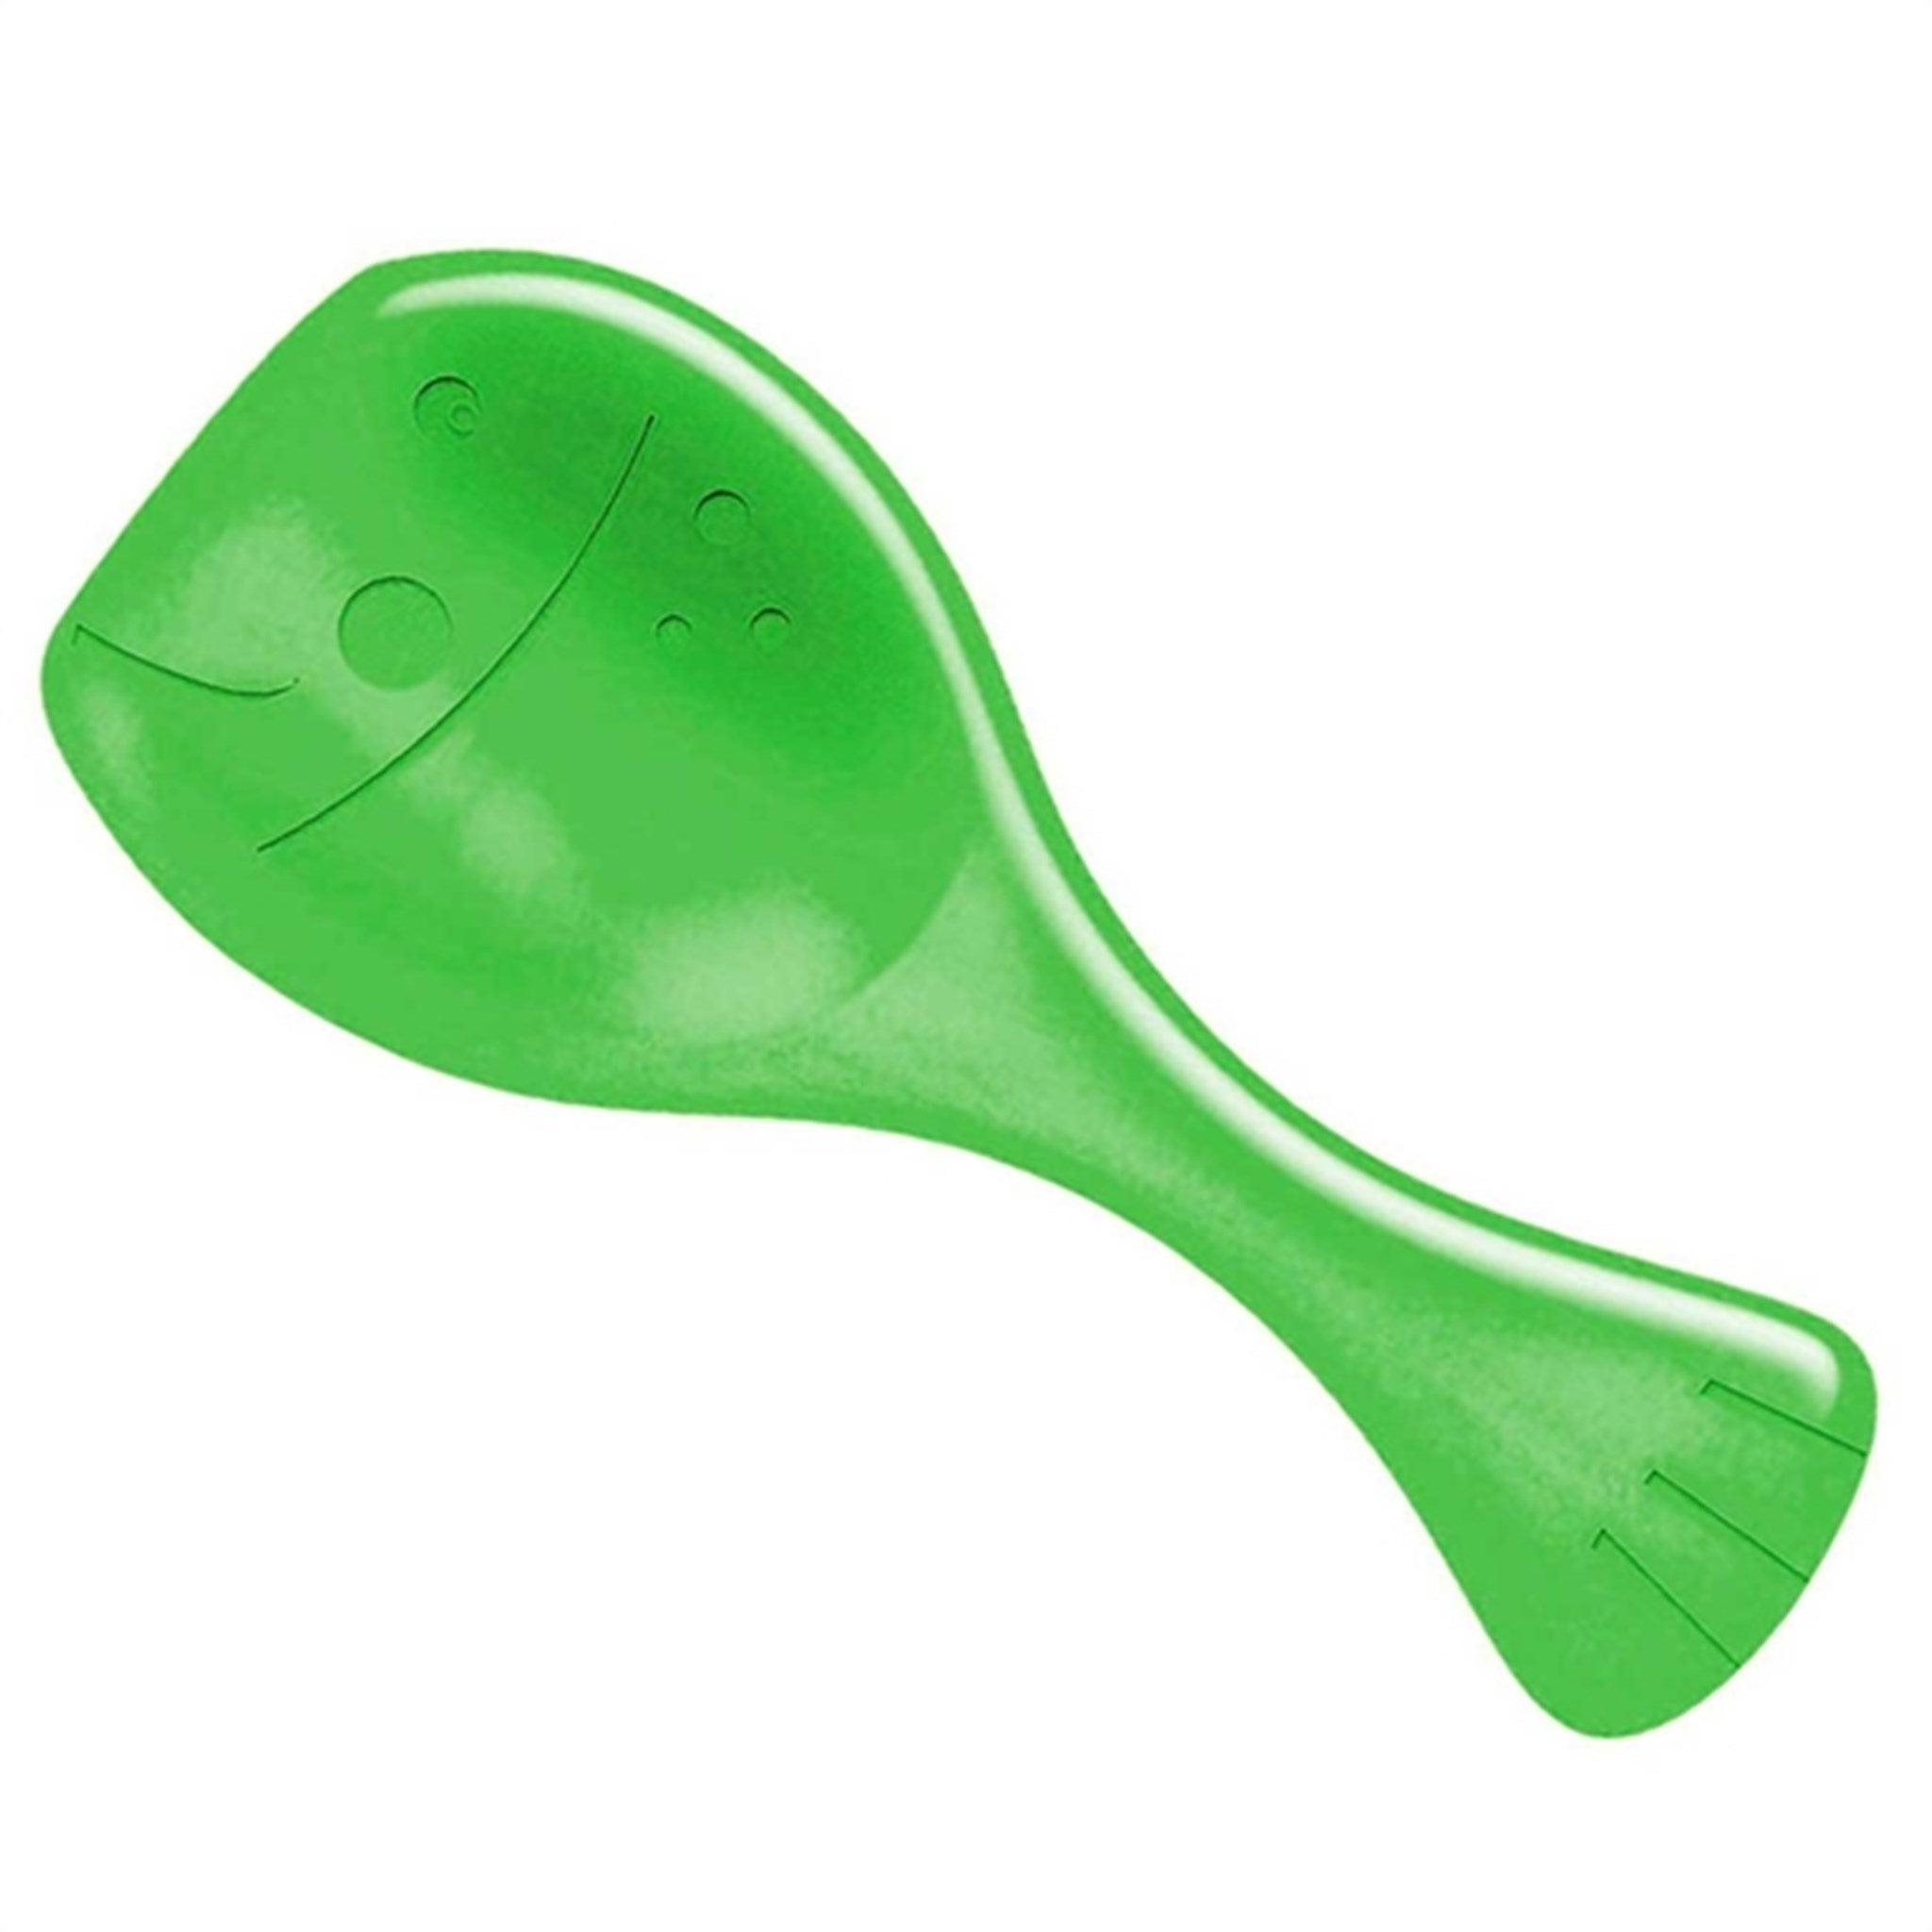 Spielstabil Baby Shovel Green